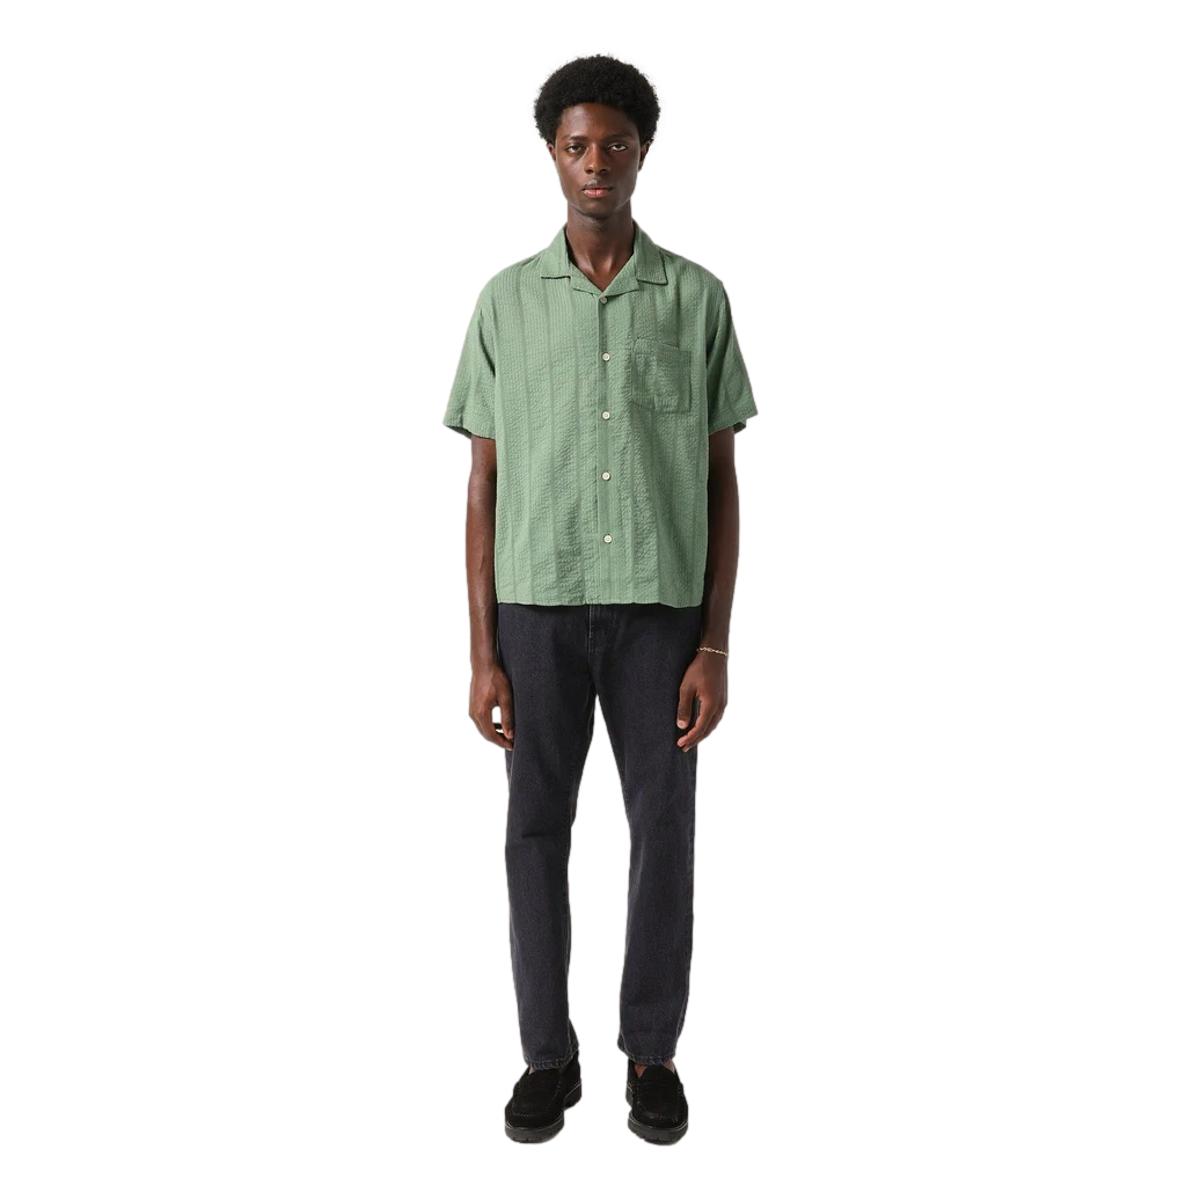 Striped Seersucker Short Sleeve Green - Shirt